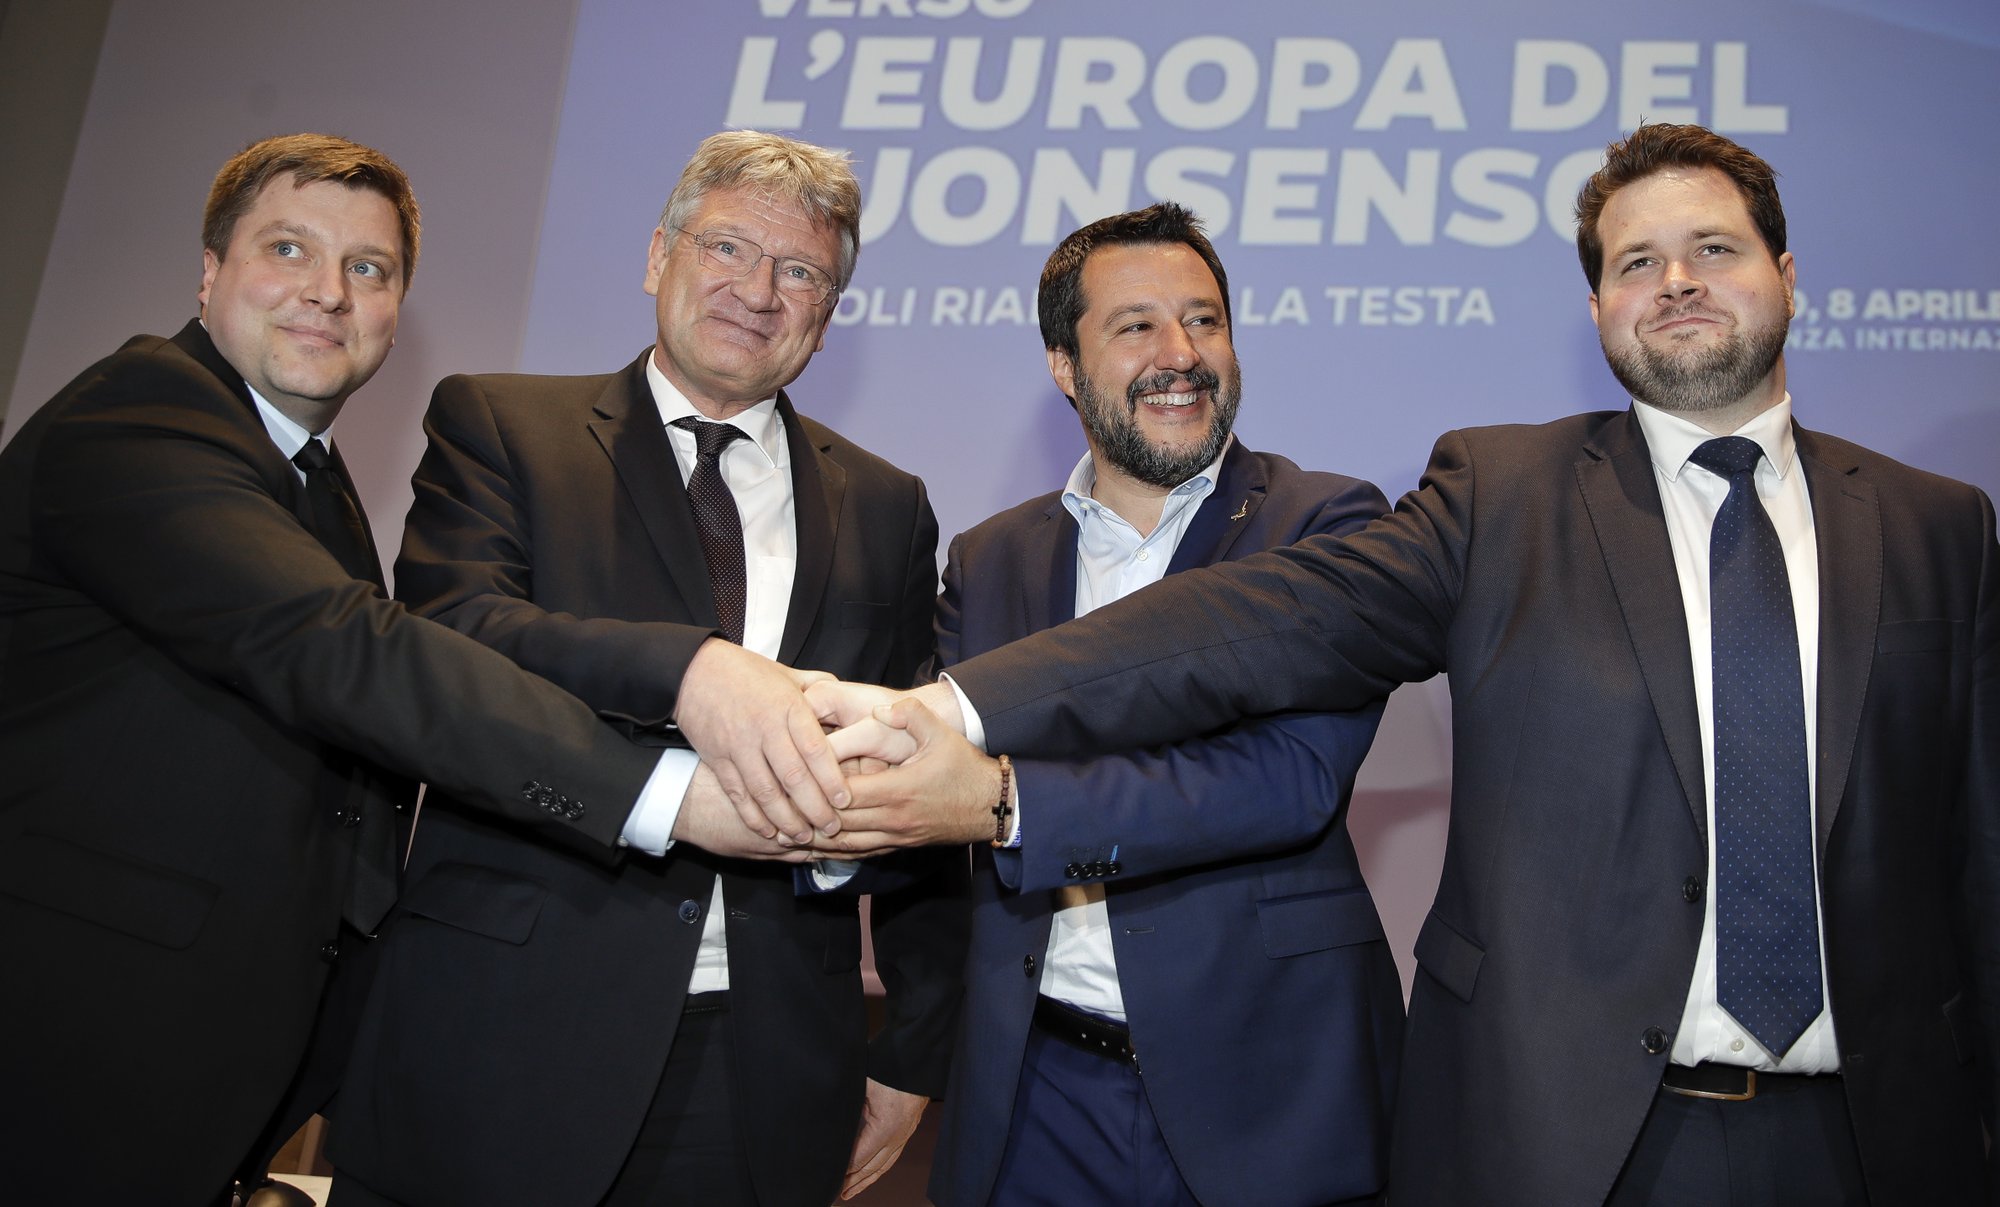 Ο Αντώνης Τριφύλλης καλεί Έλληνες και Ευρωπαίους δημοκράτες να αφυπνιστούν και στις Ευρωεκλογές με την ψήφο τους να ανακόψουν την ενίσχυση των ακροδεξιών κομμάτων που εργάζονται για την επανίδρυση της Ευρωπαϊκής Μαύρης Διεθνούς. new deal